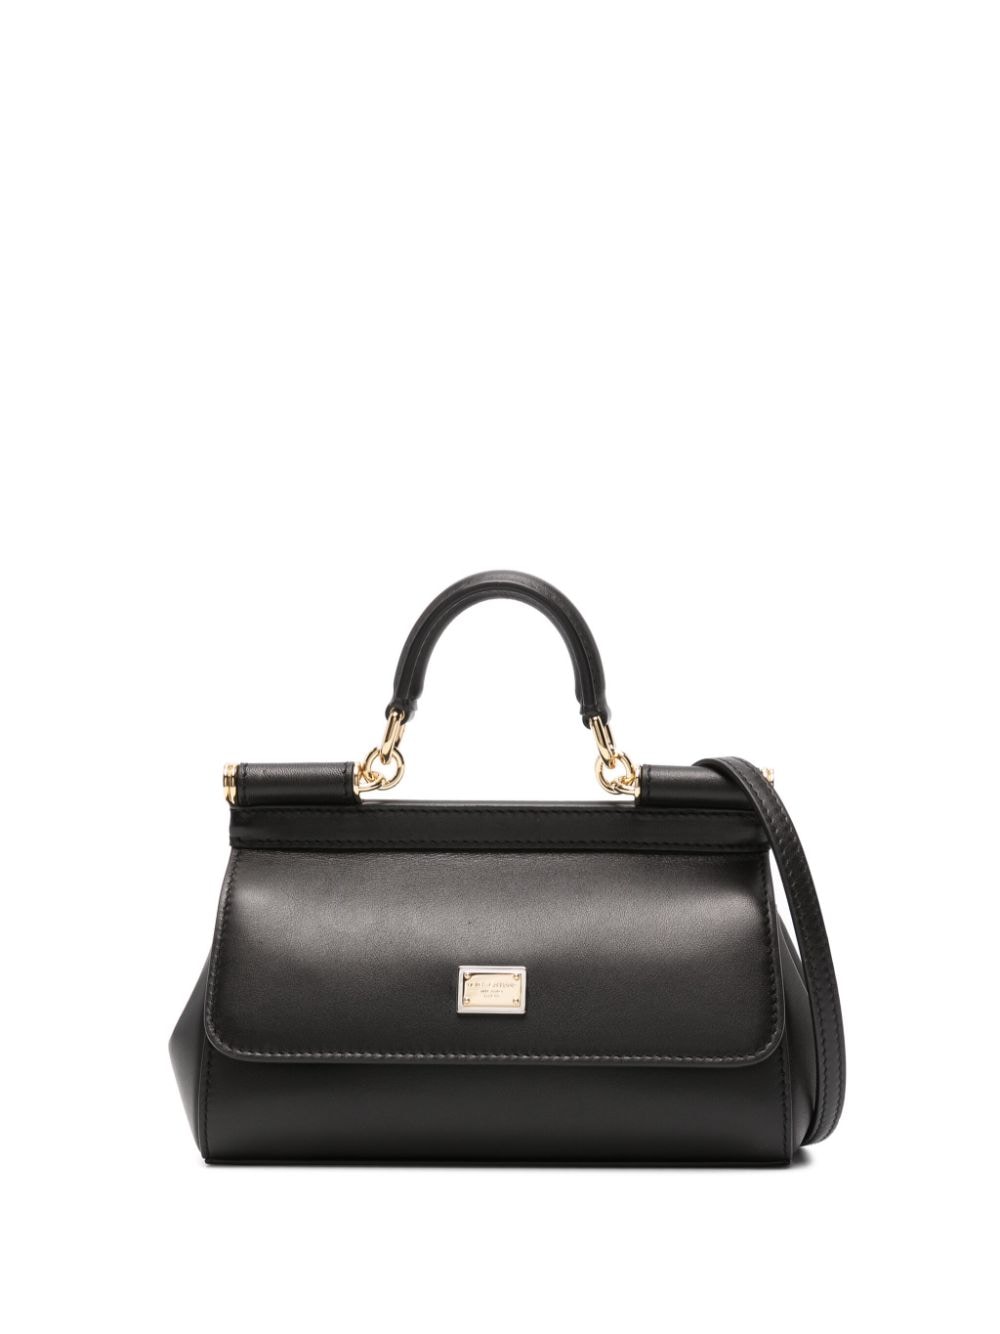 Dolce & Gabbana Sicily Leather Tote Bag In Black